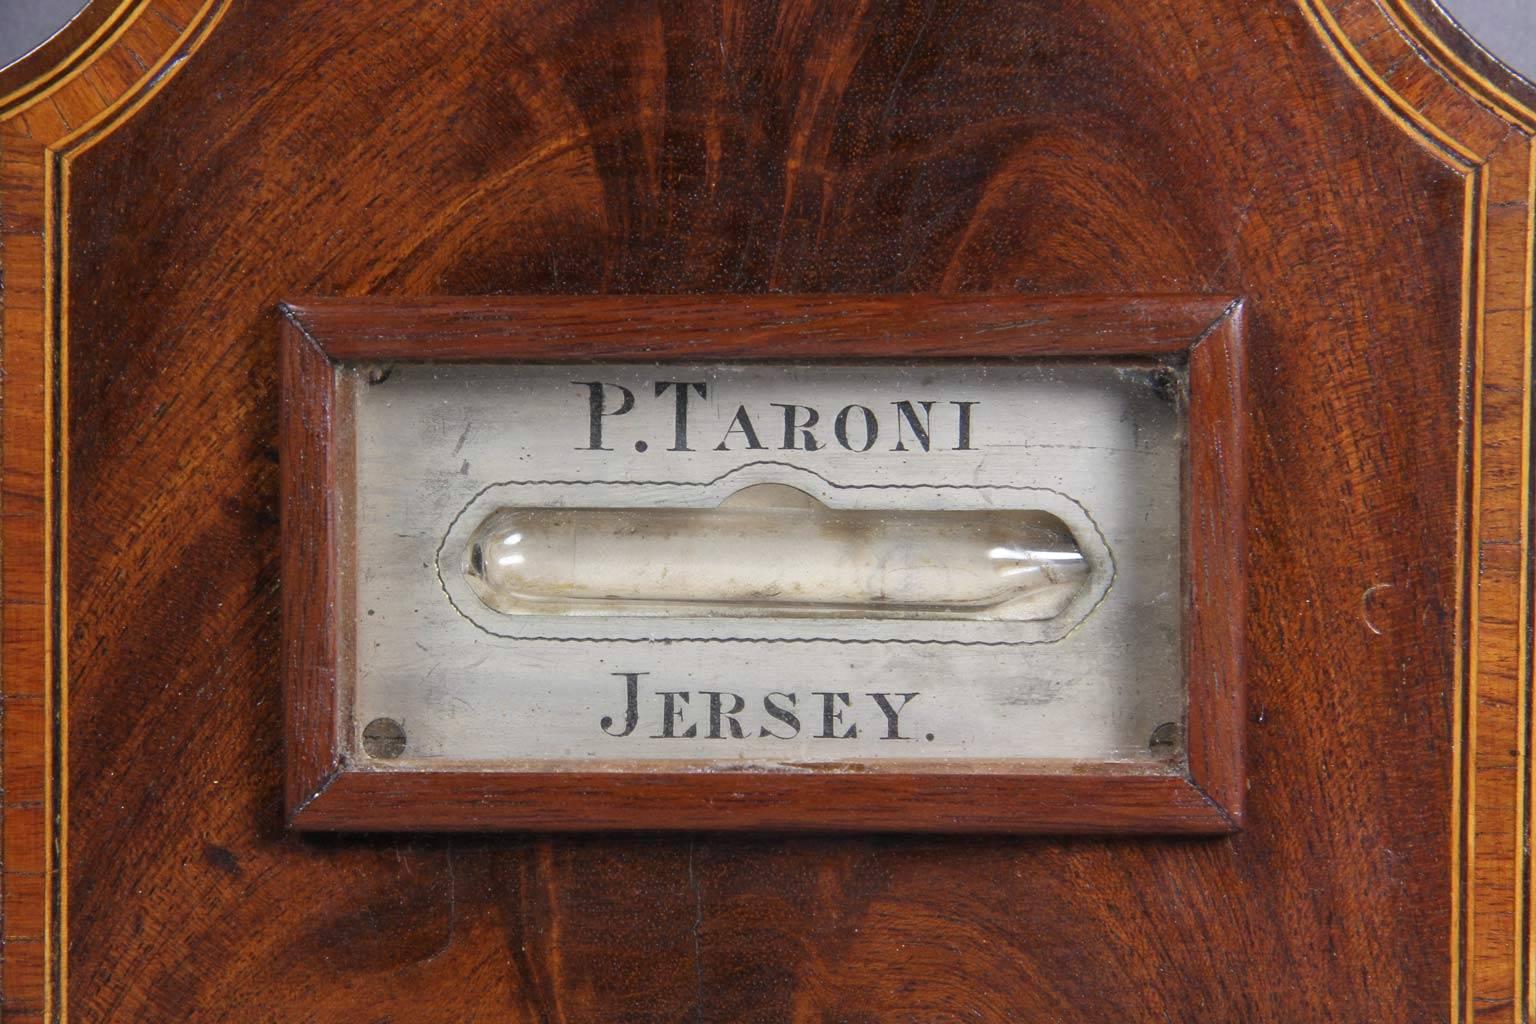 Regency-Barometer oder -Uhr aus Mahagoni mit Intarsien von P. Taroni, Jersey (Sonstiges)